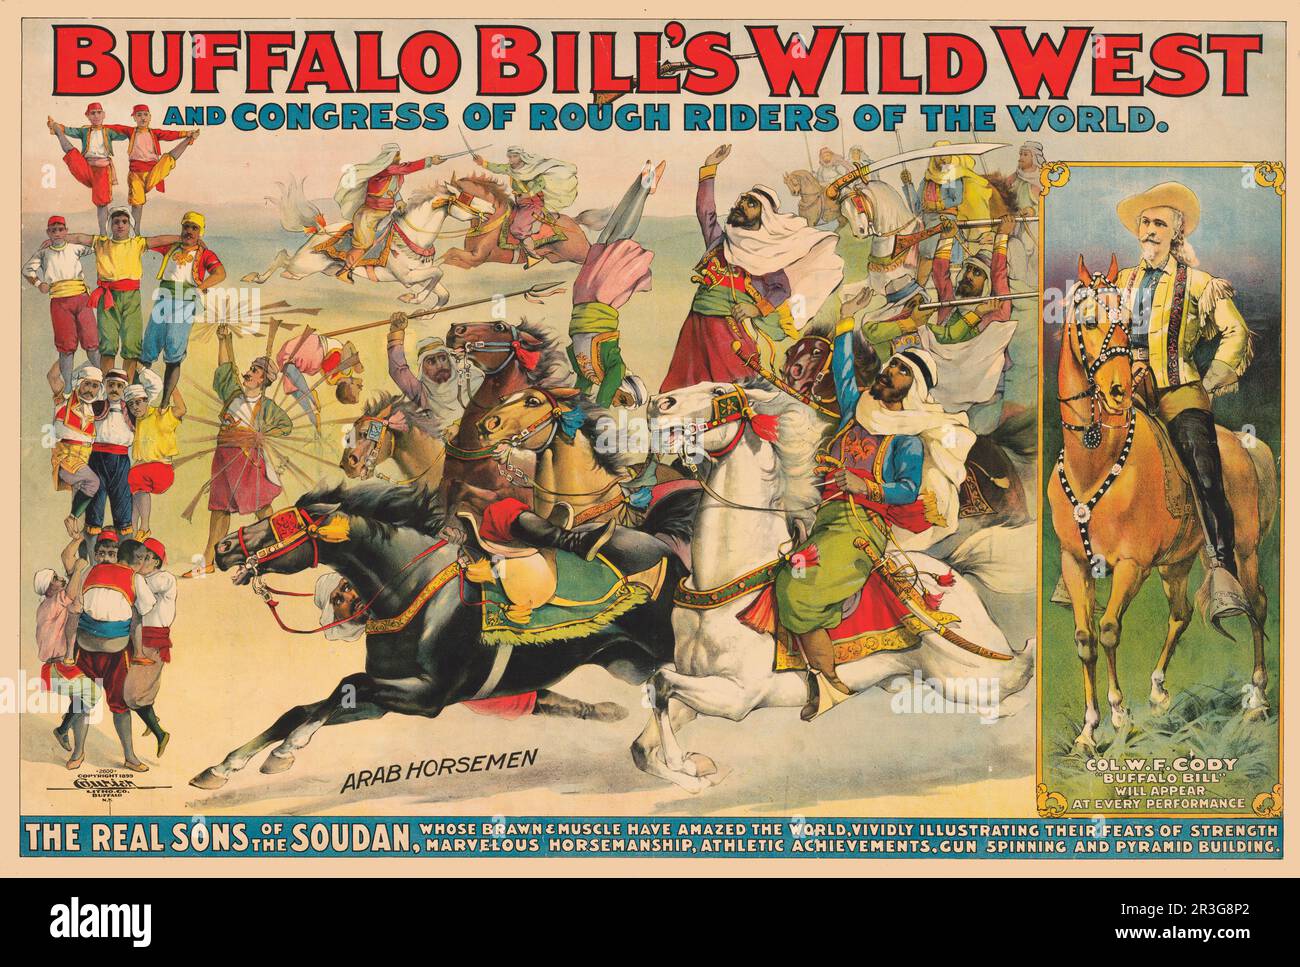 Affiche de cirque Wild West de Buffalo Bill's vintage montrant un cheval de cavaliers arabes, qui se produit à cheval, vers 1899. Banque D'Images